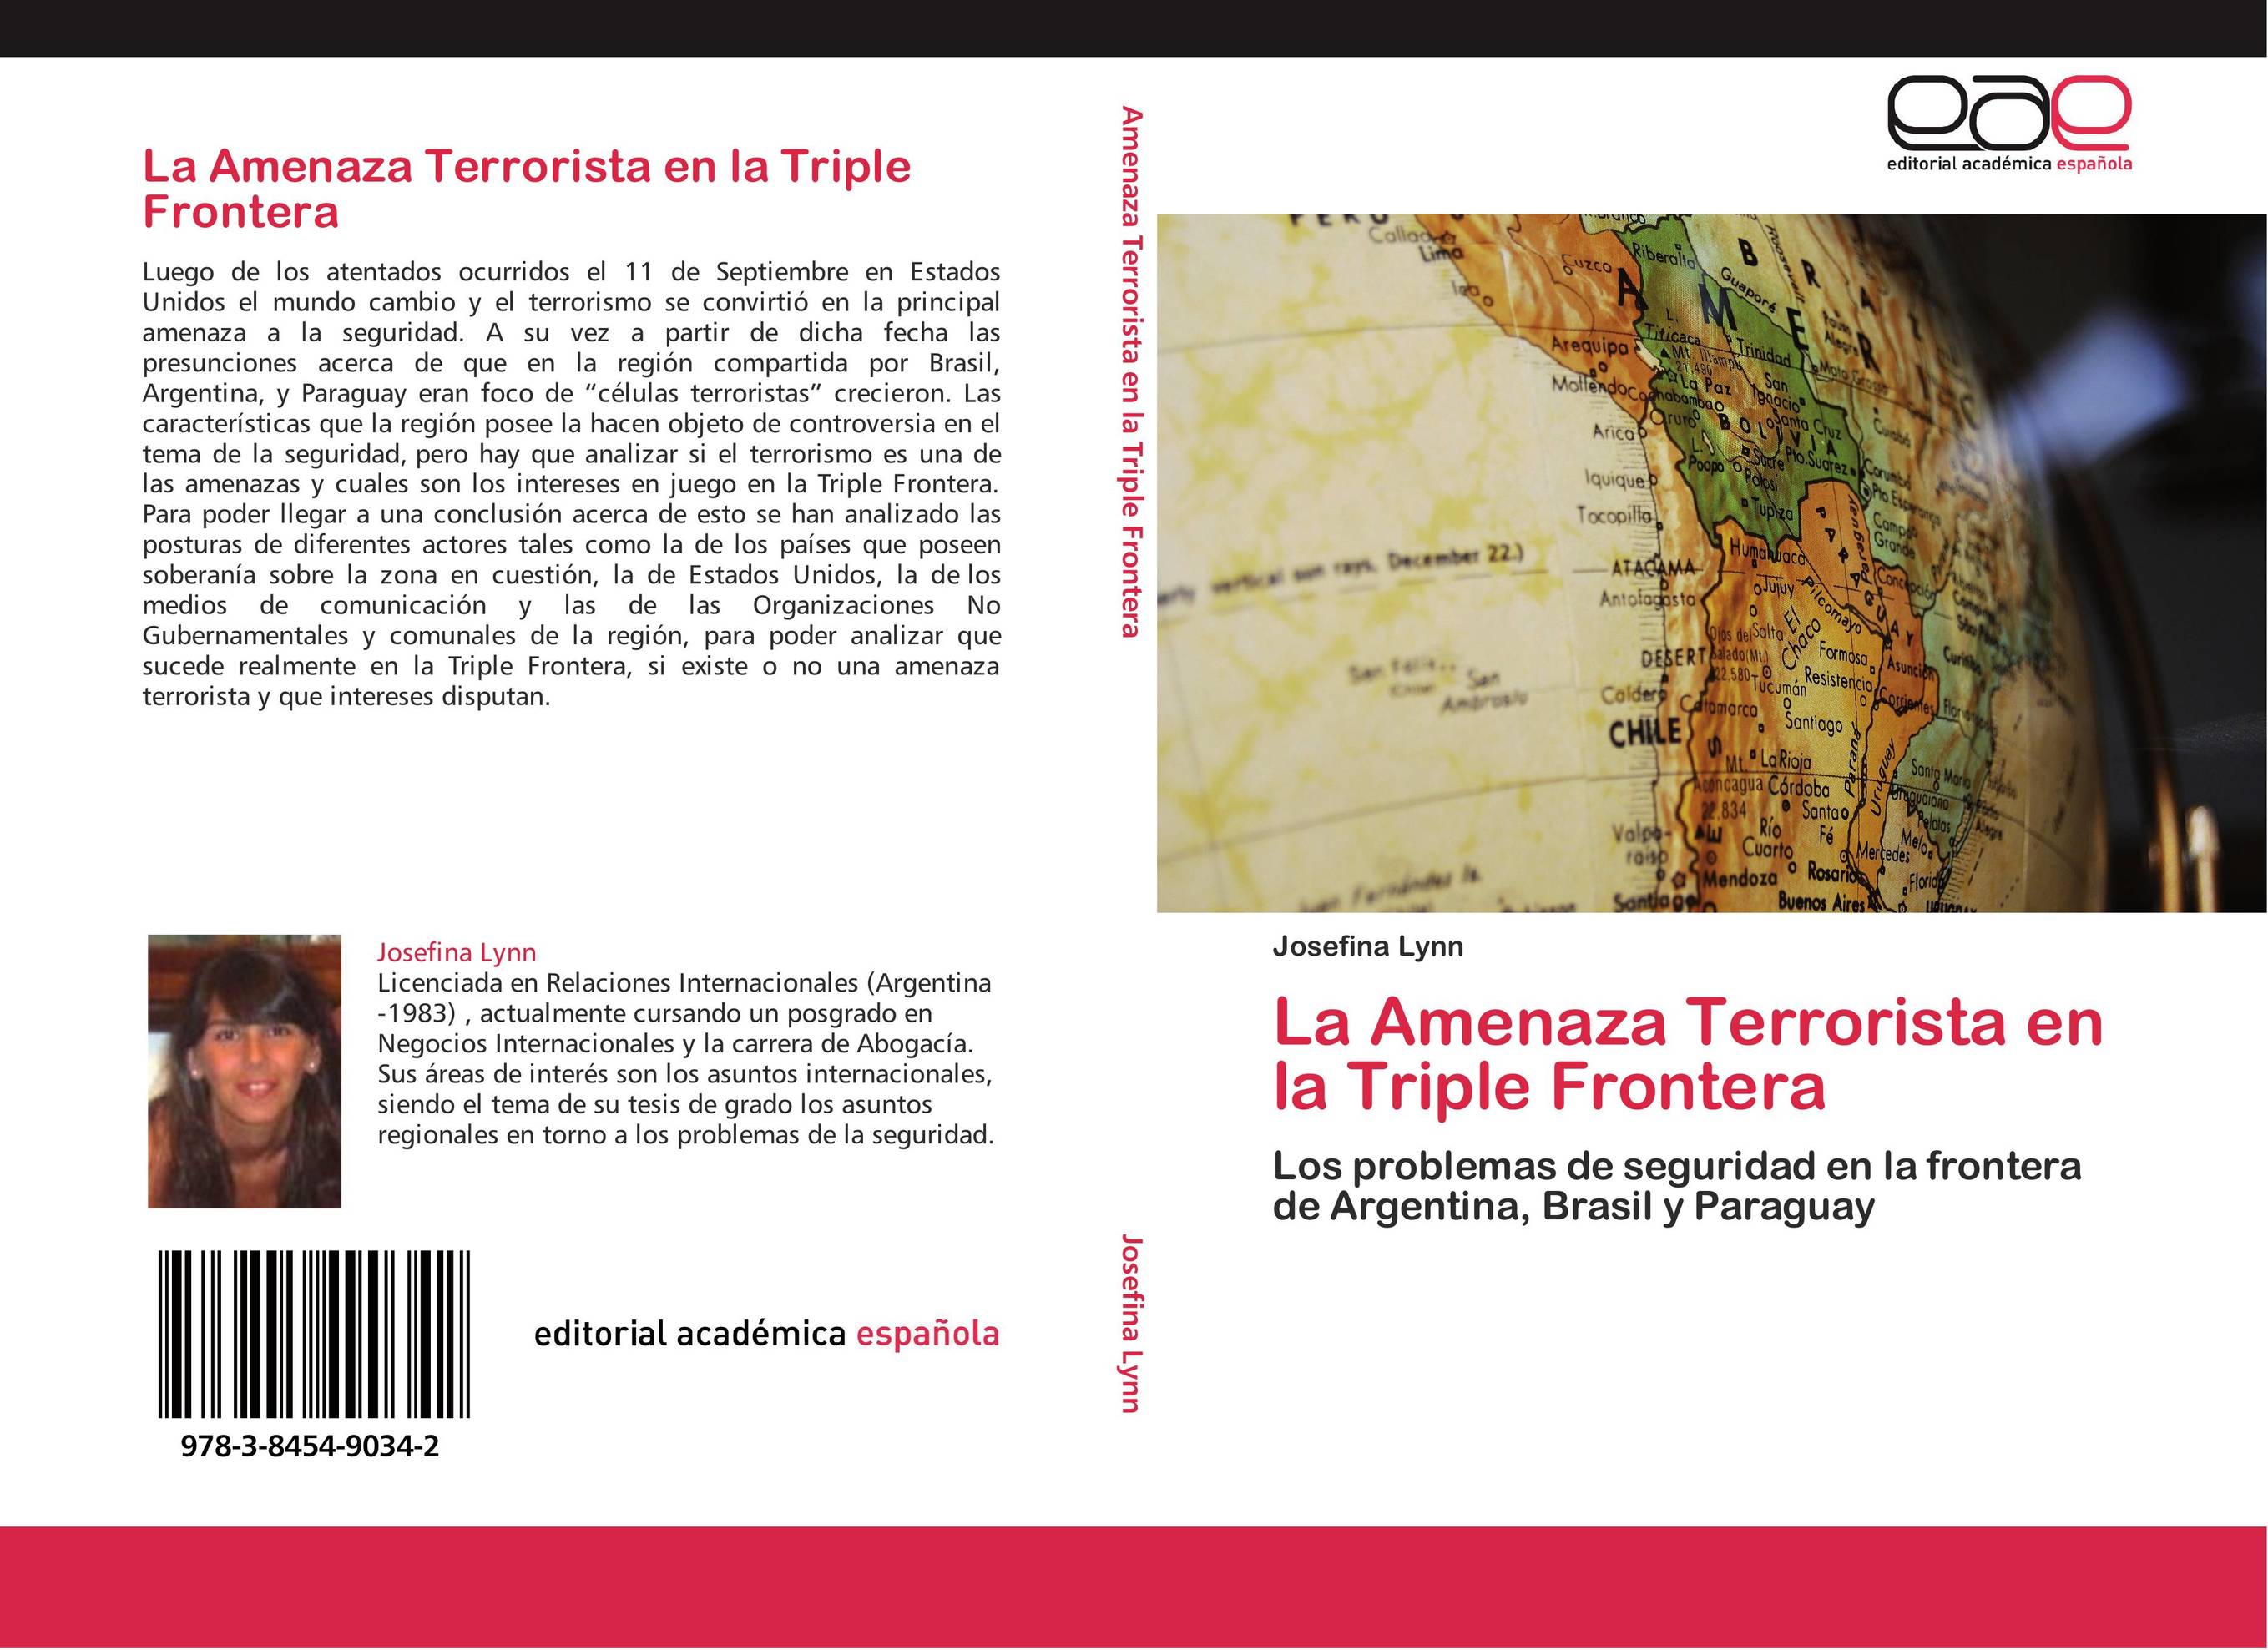 La Amenaza Terrorista en la Triple Frontera